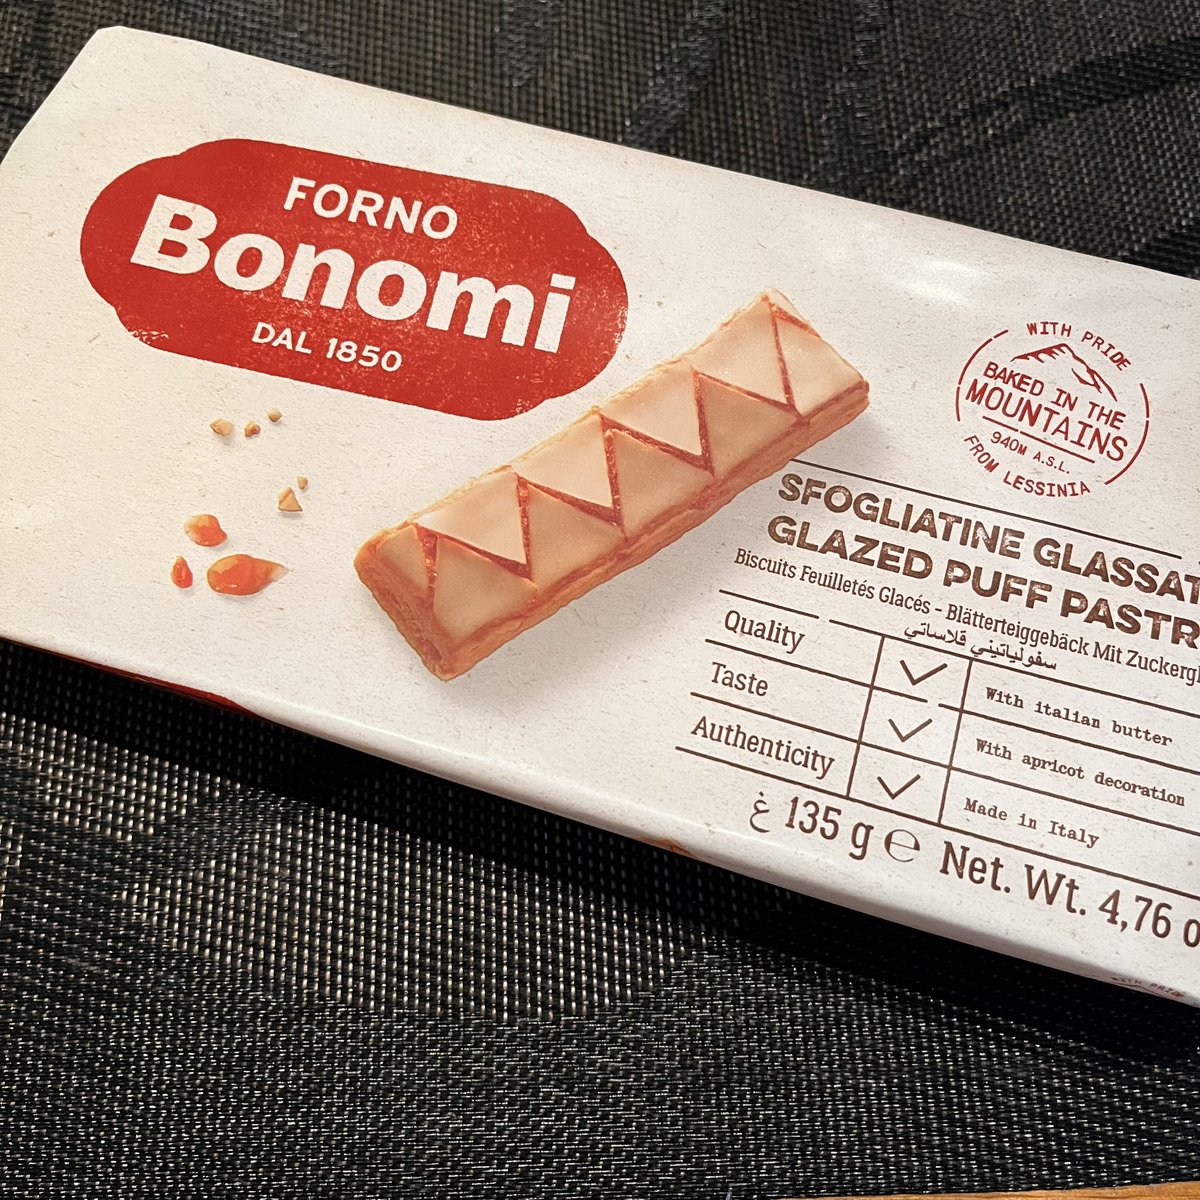 今日はパイみたいなBonomiって菓子。
平日のパンを買いに行くのを忘れていました。
そして、昨日の黄桃が残っていた事を、食後に思い出しました。

缶ではなく瓶なので、まだもつでしょう。

iPho
charu.tuna.be/22824813.html#…
#sumisuki #bonomi #朝食 #珈琲 #コーヒー #coffee 
instagram.com/p/C6pKFFUSLnp/…